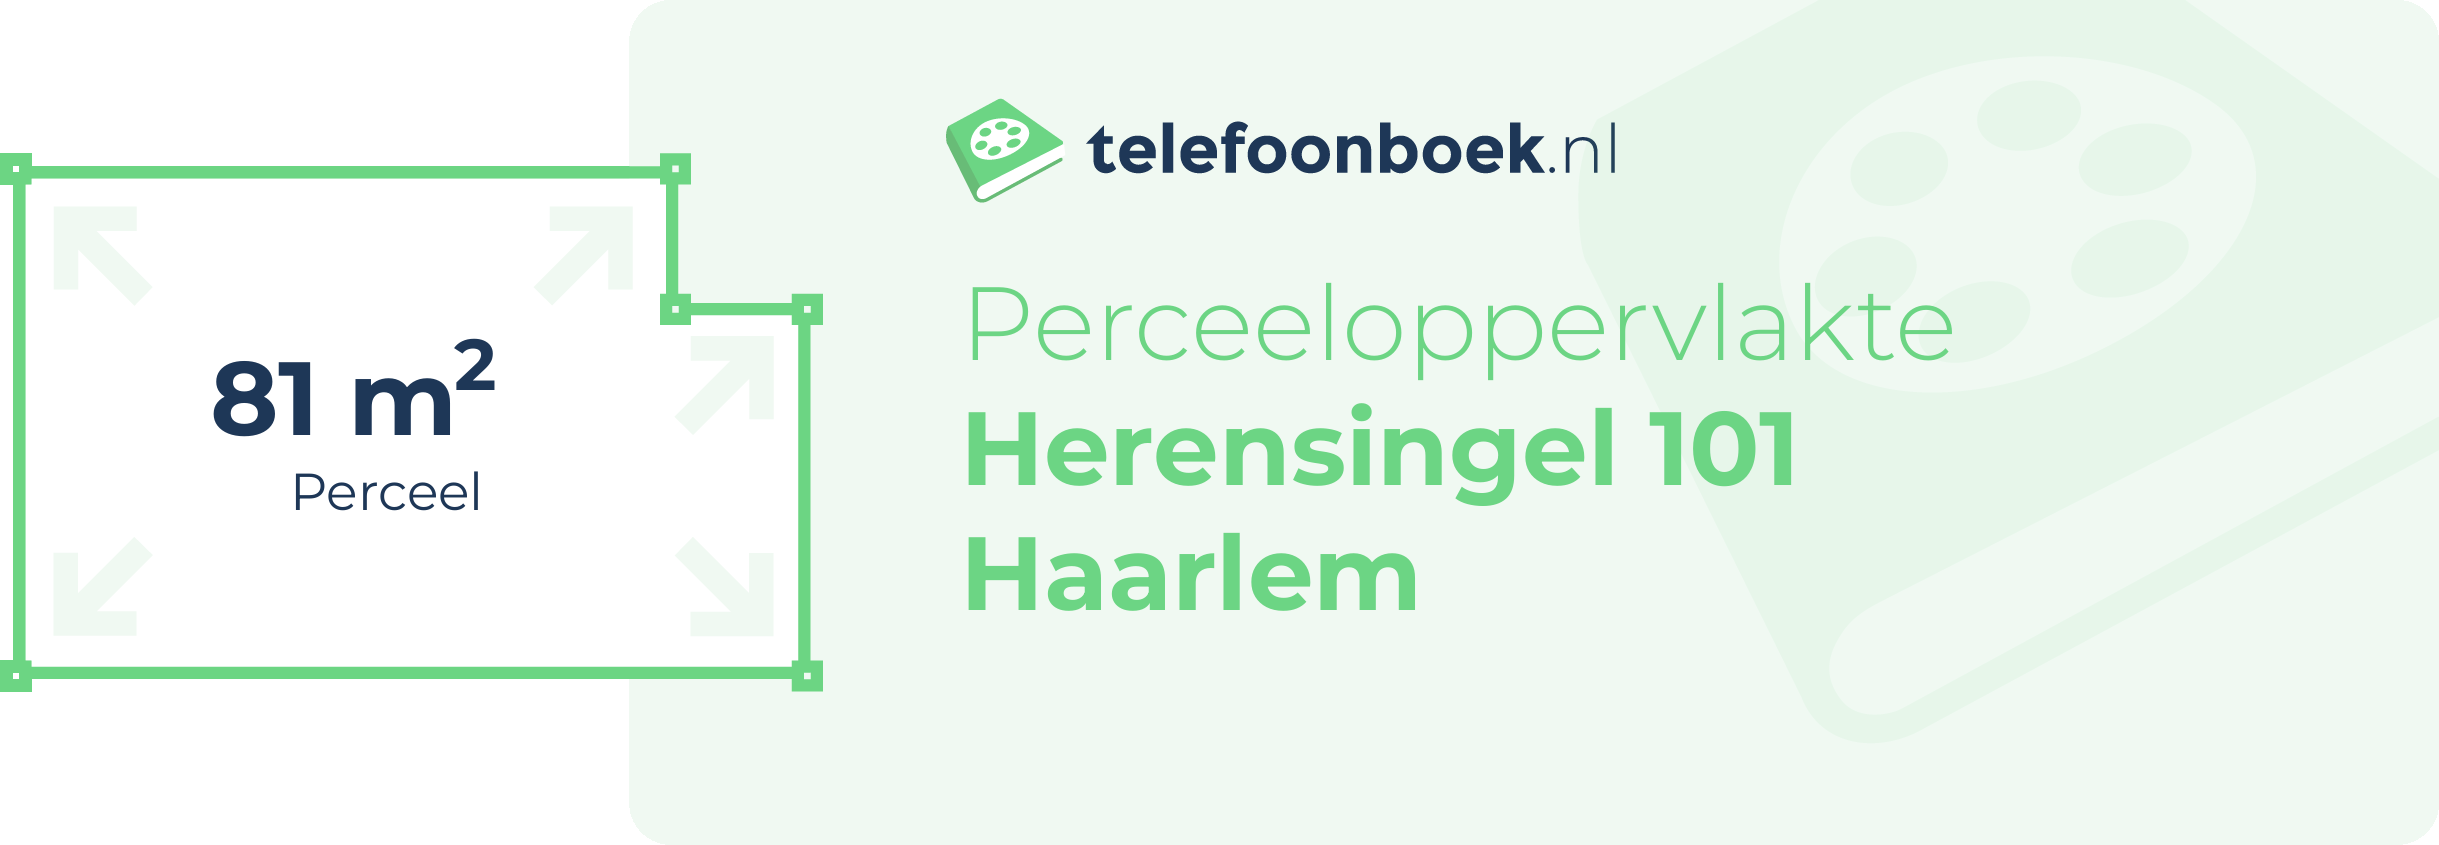 Perceeloppervlakte Herensingel 101 Haarlem